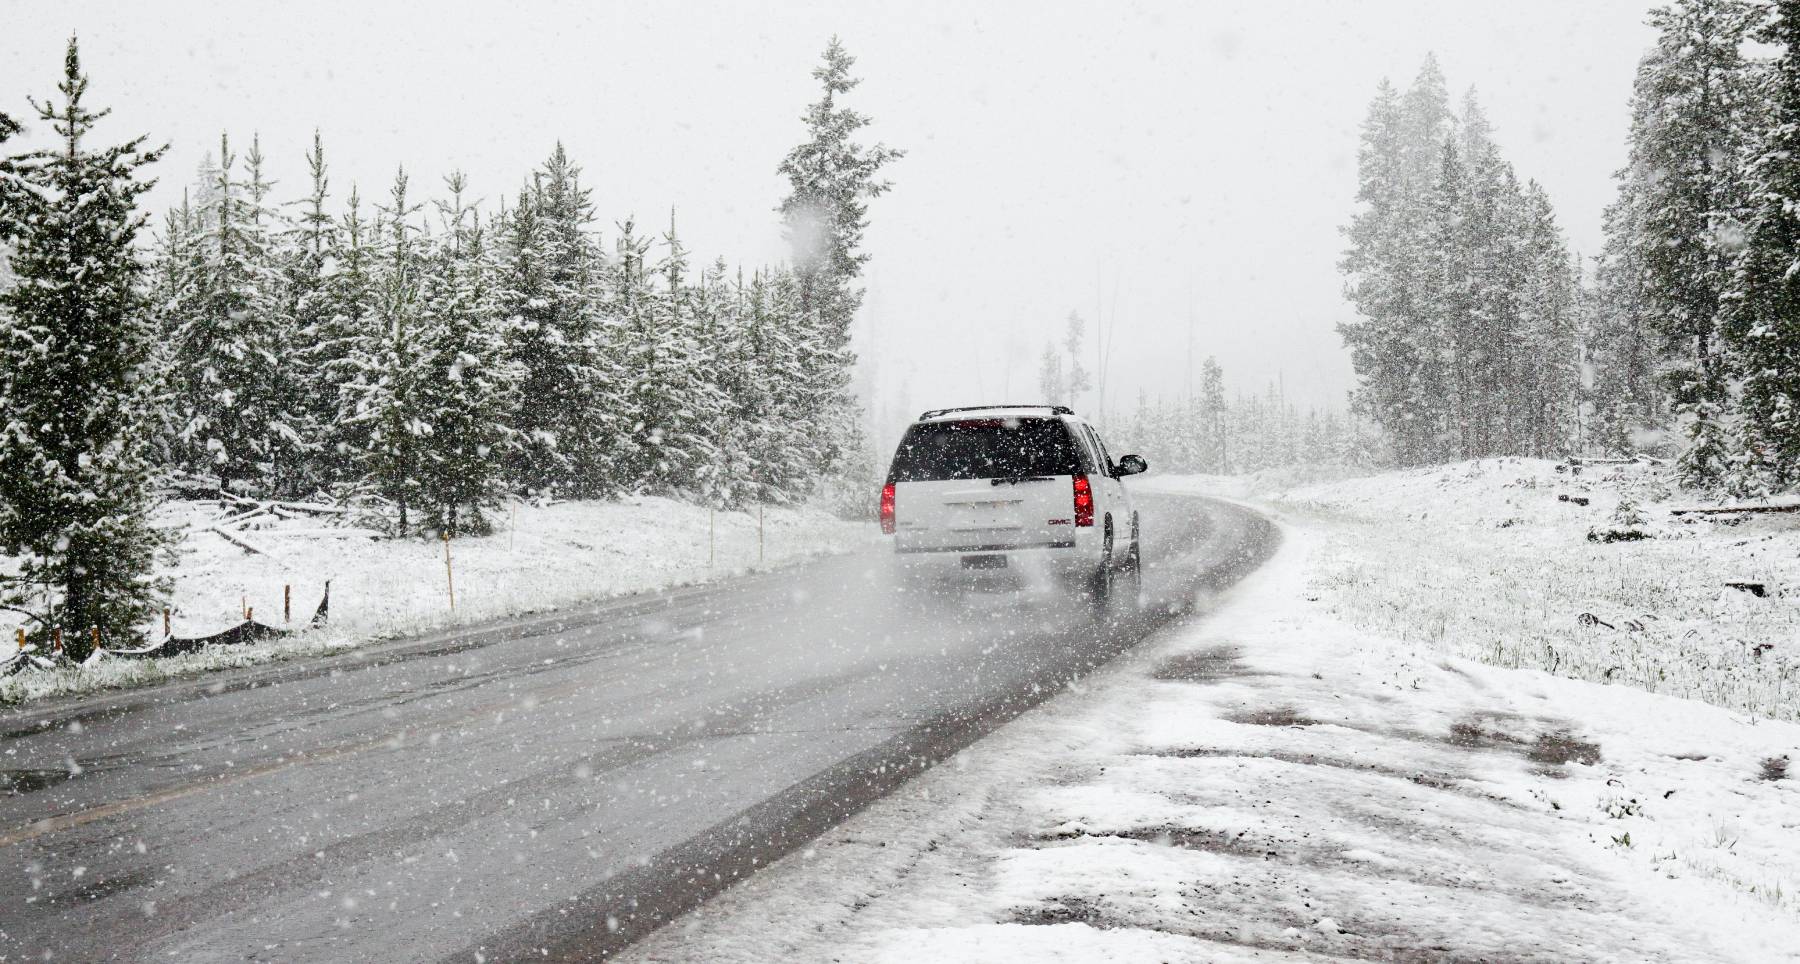 Προετοιμασία αυτοκινήτου για την χειμερινή εξόρμηση: Τι να προσέξετε